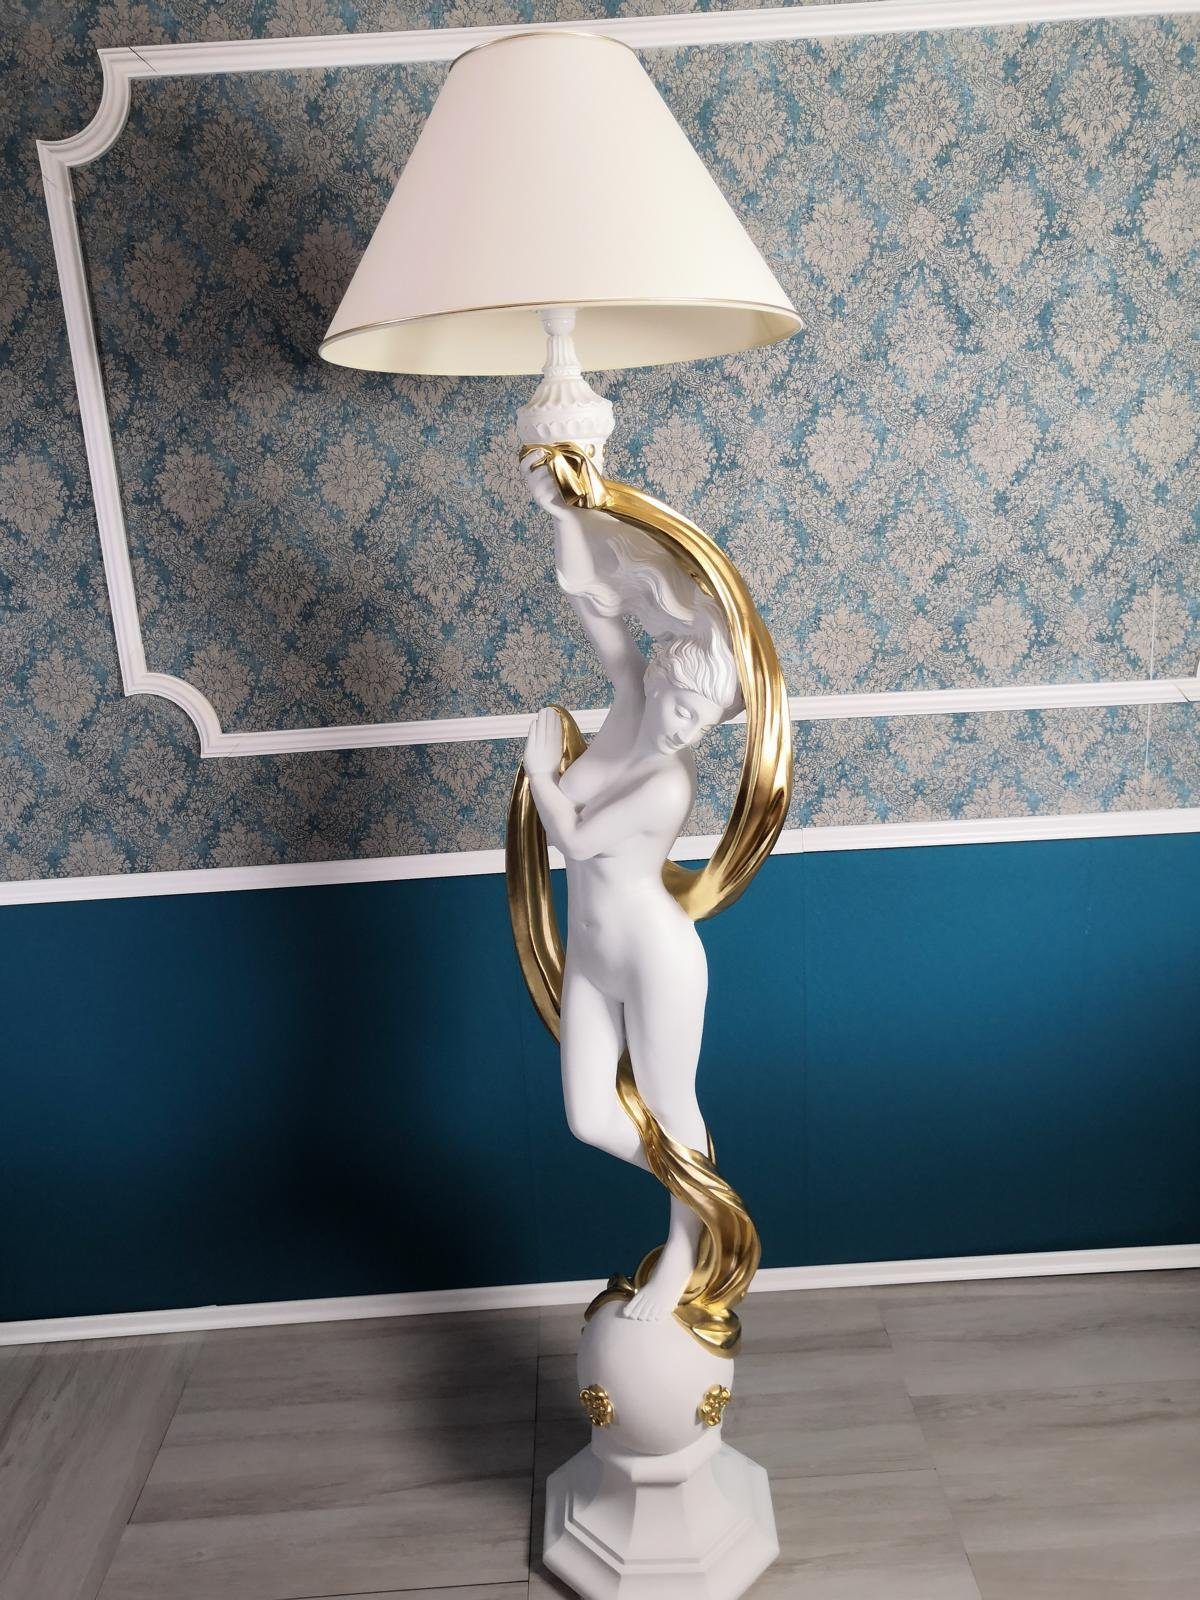 JVmoebel Skulptur Stehleuchte Stand Design Lampen Figur Leuchten 200cm Lampe Leuchte